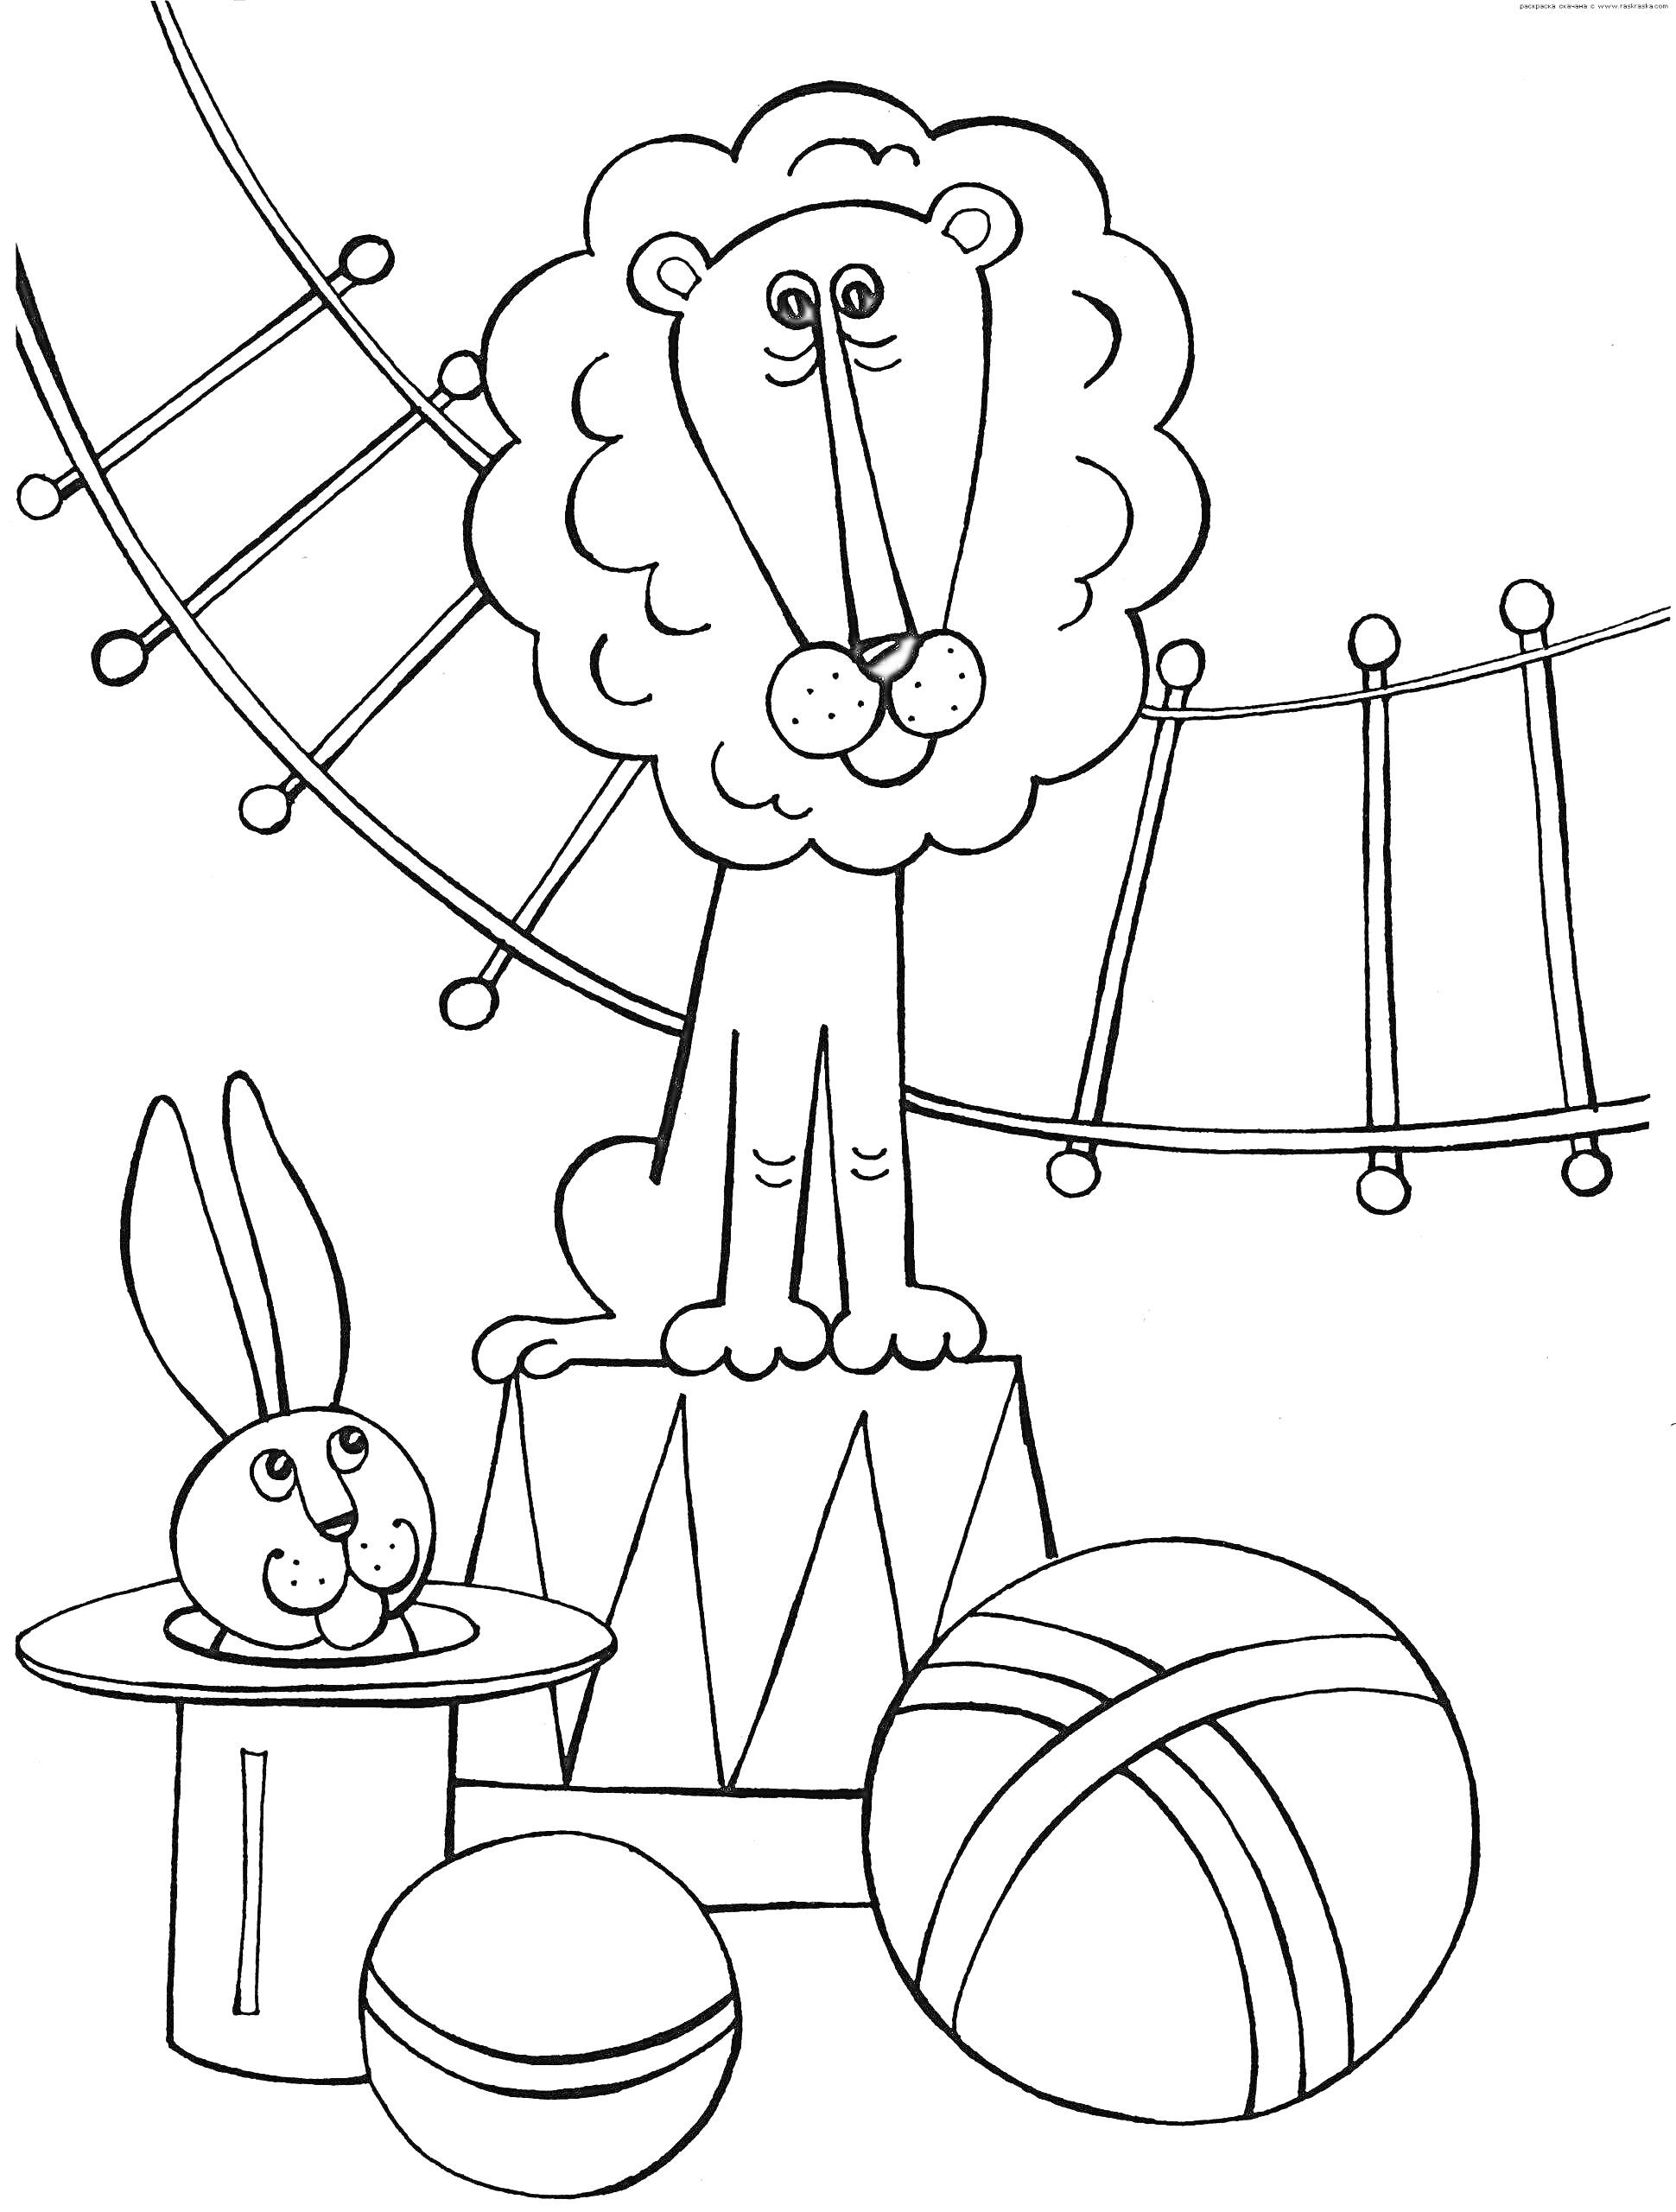 Лев на цирковом тумбе, кролик в шляпе, два мяча и трапеция на фоне